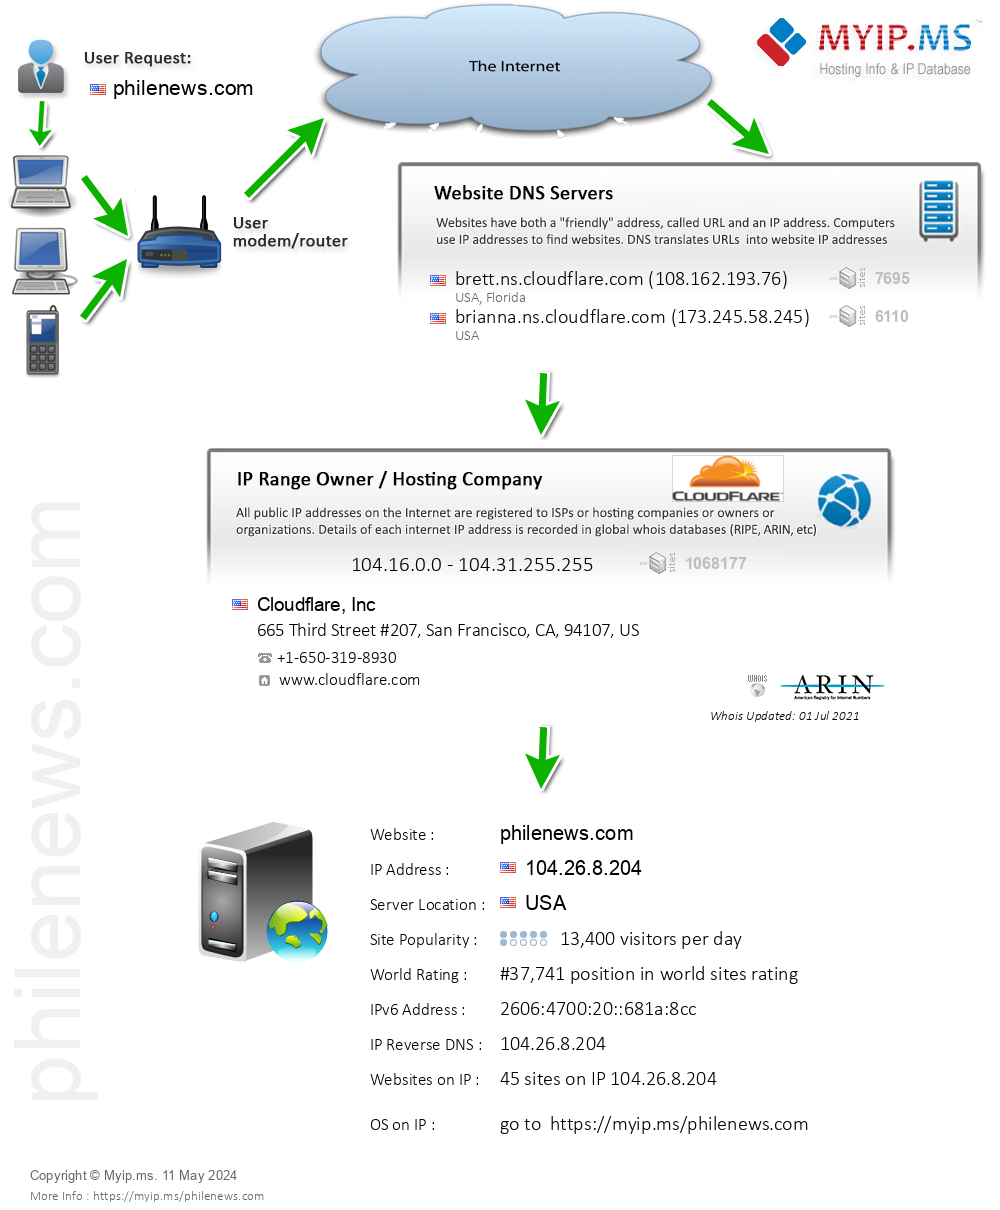 Philenews.com - Website Hosting Visual IP Diagram